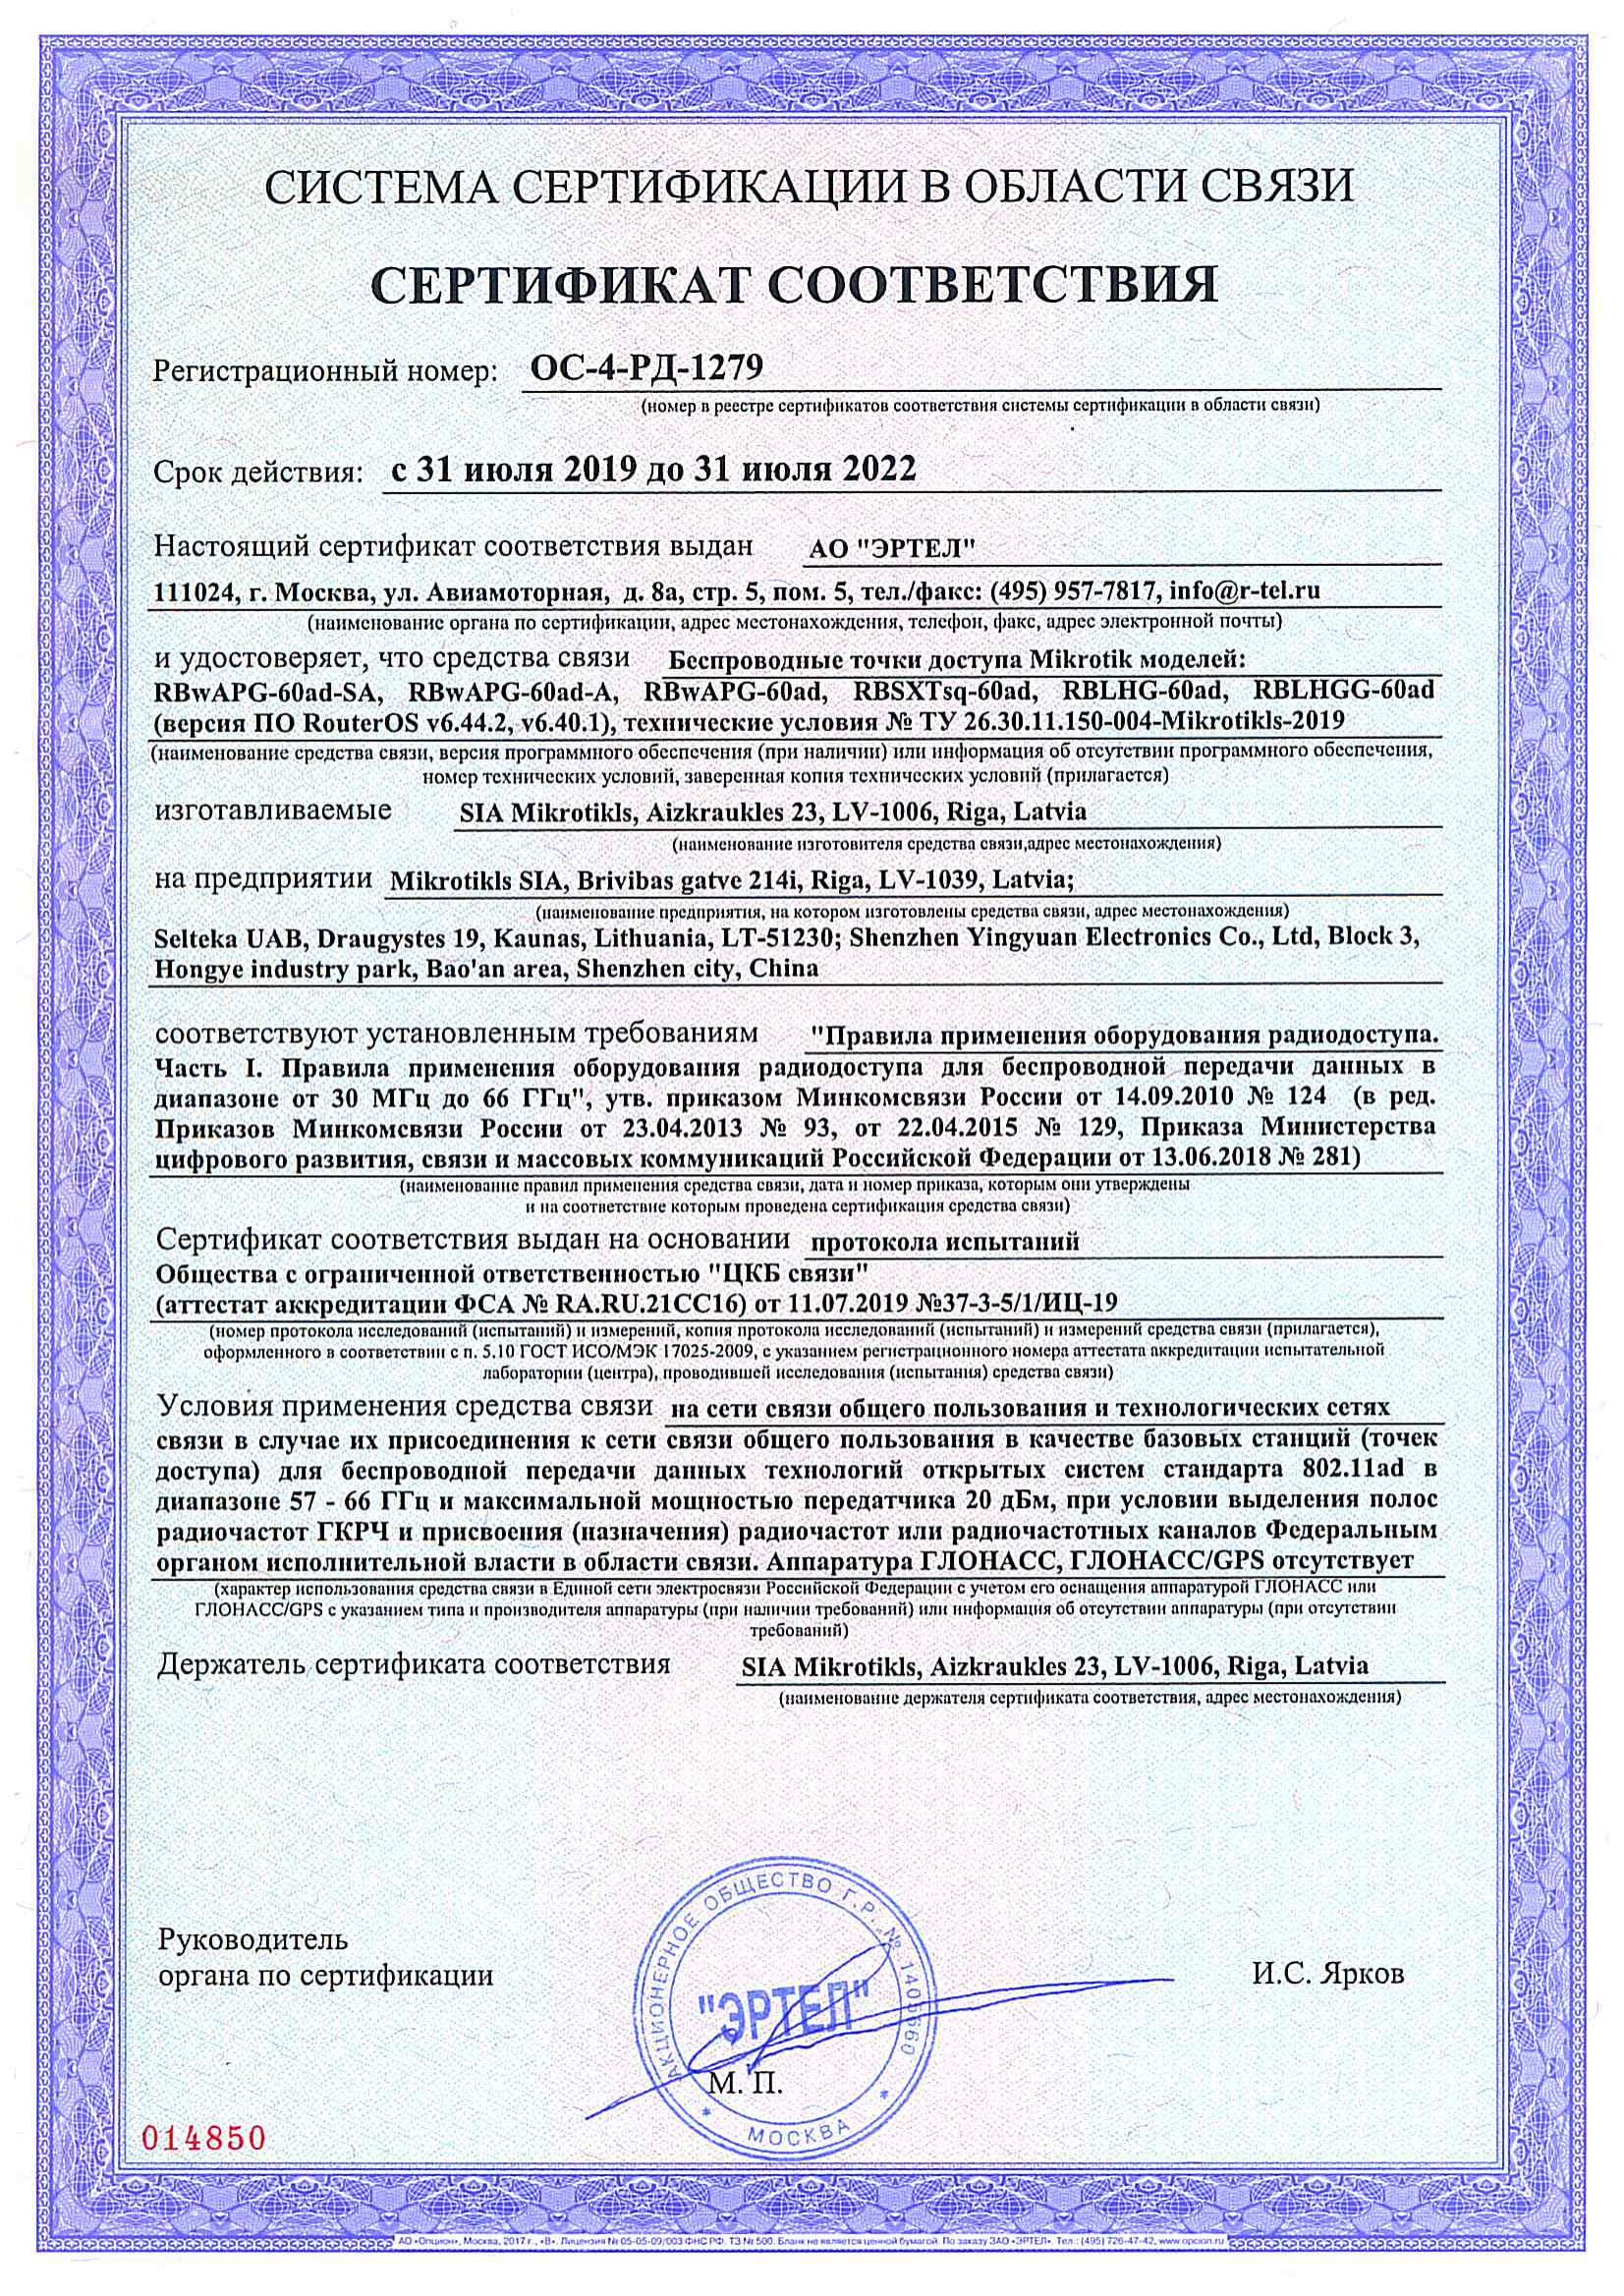 Сертификат соответствия в области связи ОС-4-РД-1279